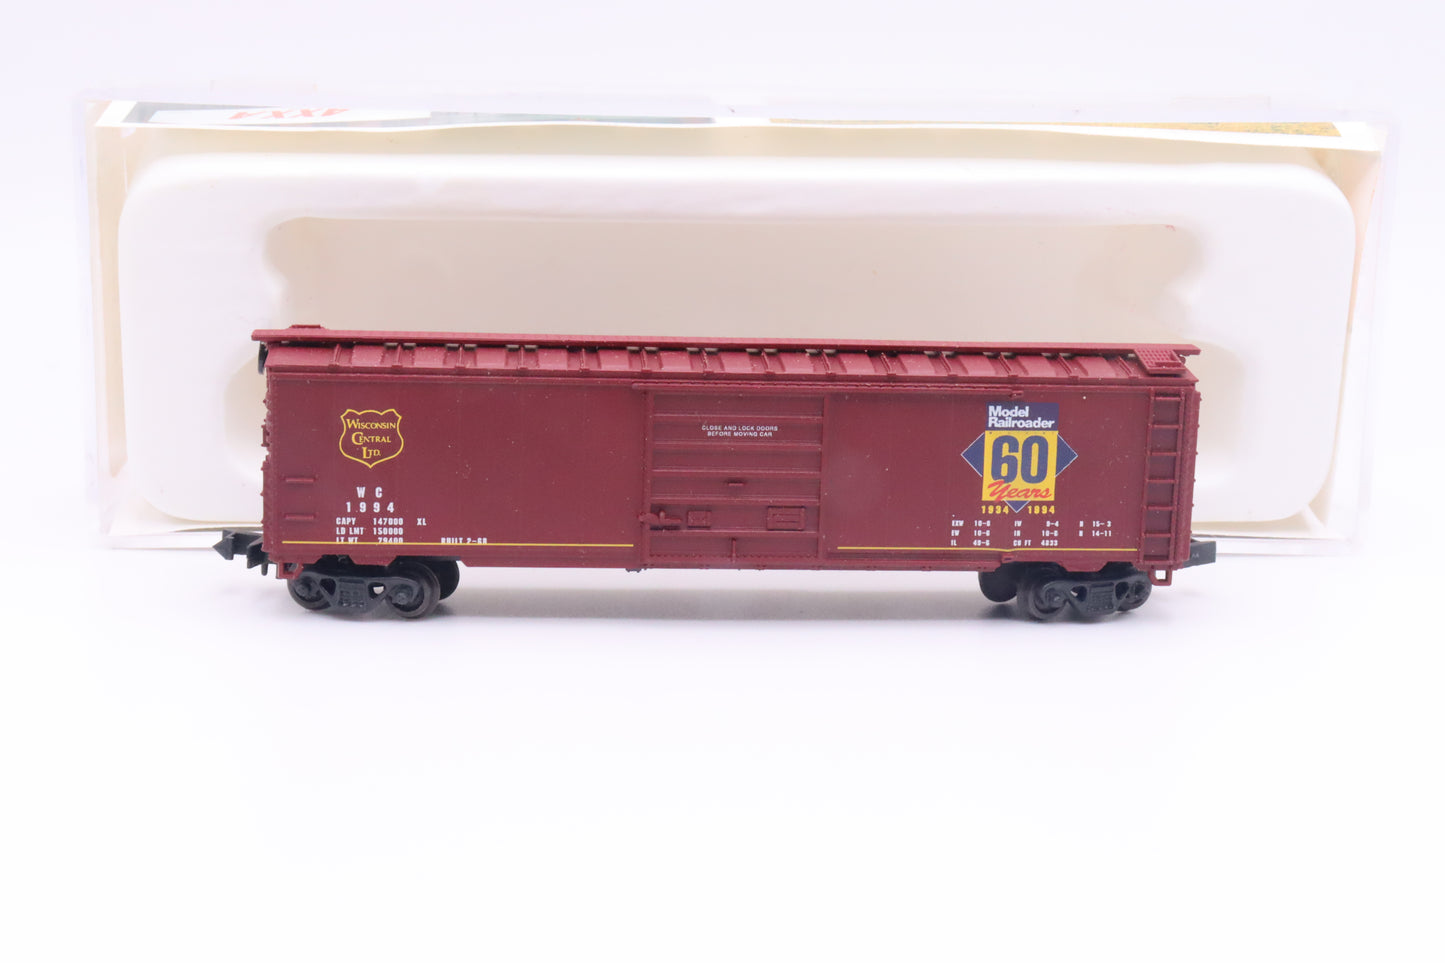 CC-1-145102 - 50' Panel Door Boxcar - Model Railroader 60th Anniversary - WC-1994